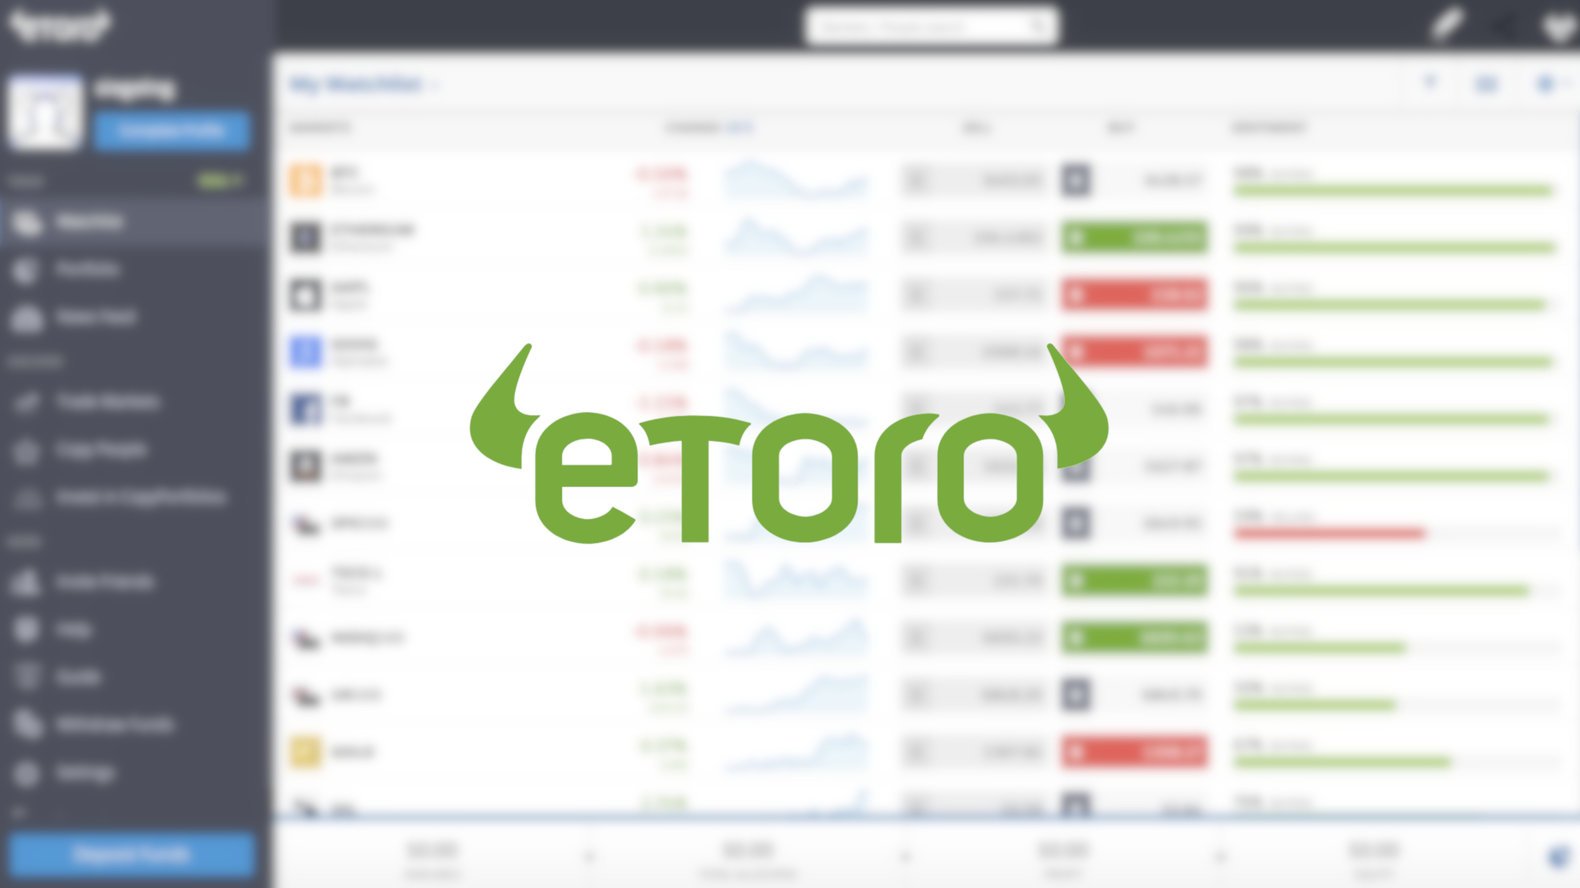 etoro exchange - کارگزاری eToro معاملات رمزنگاری را در آخر هفته محدود می کند